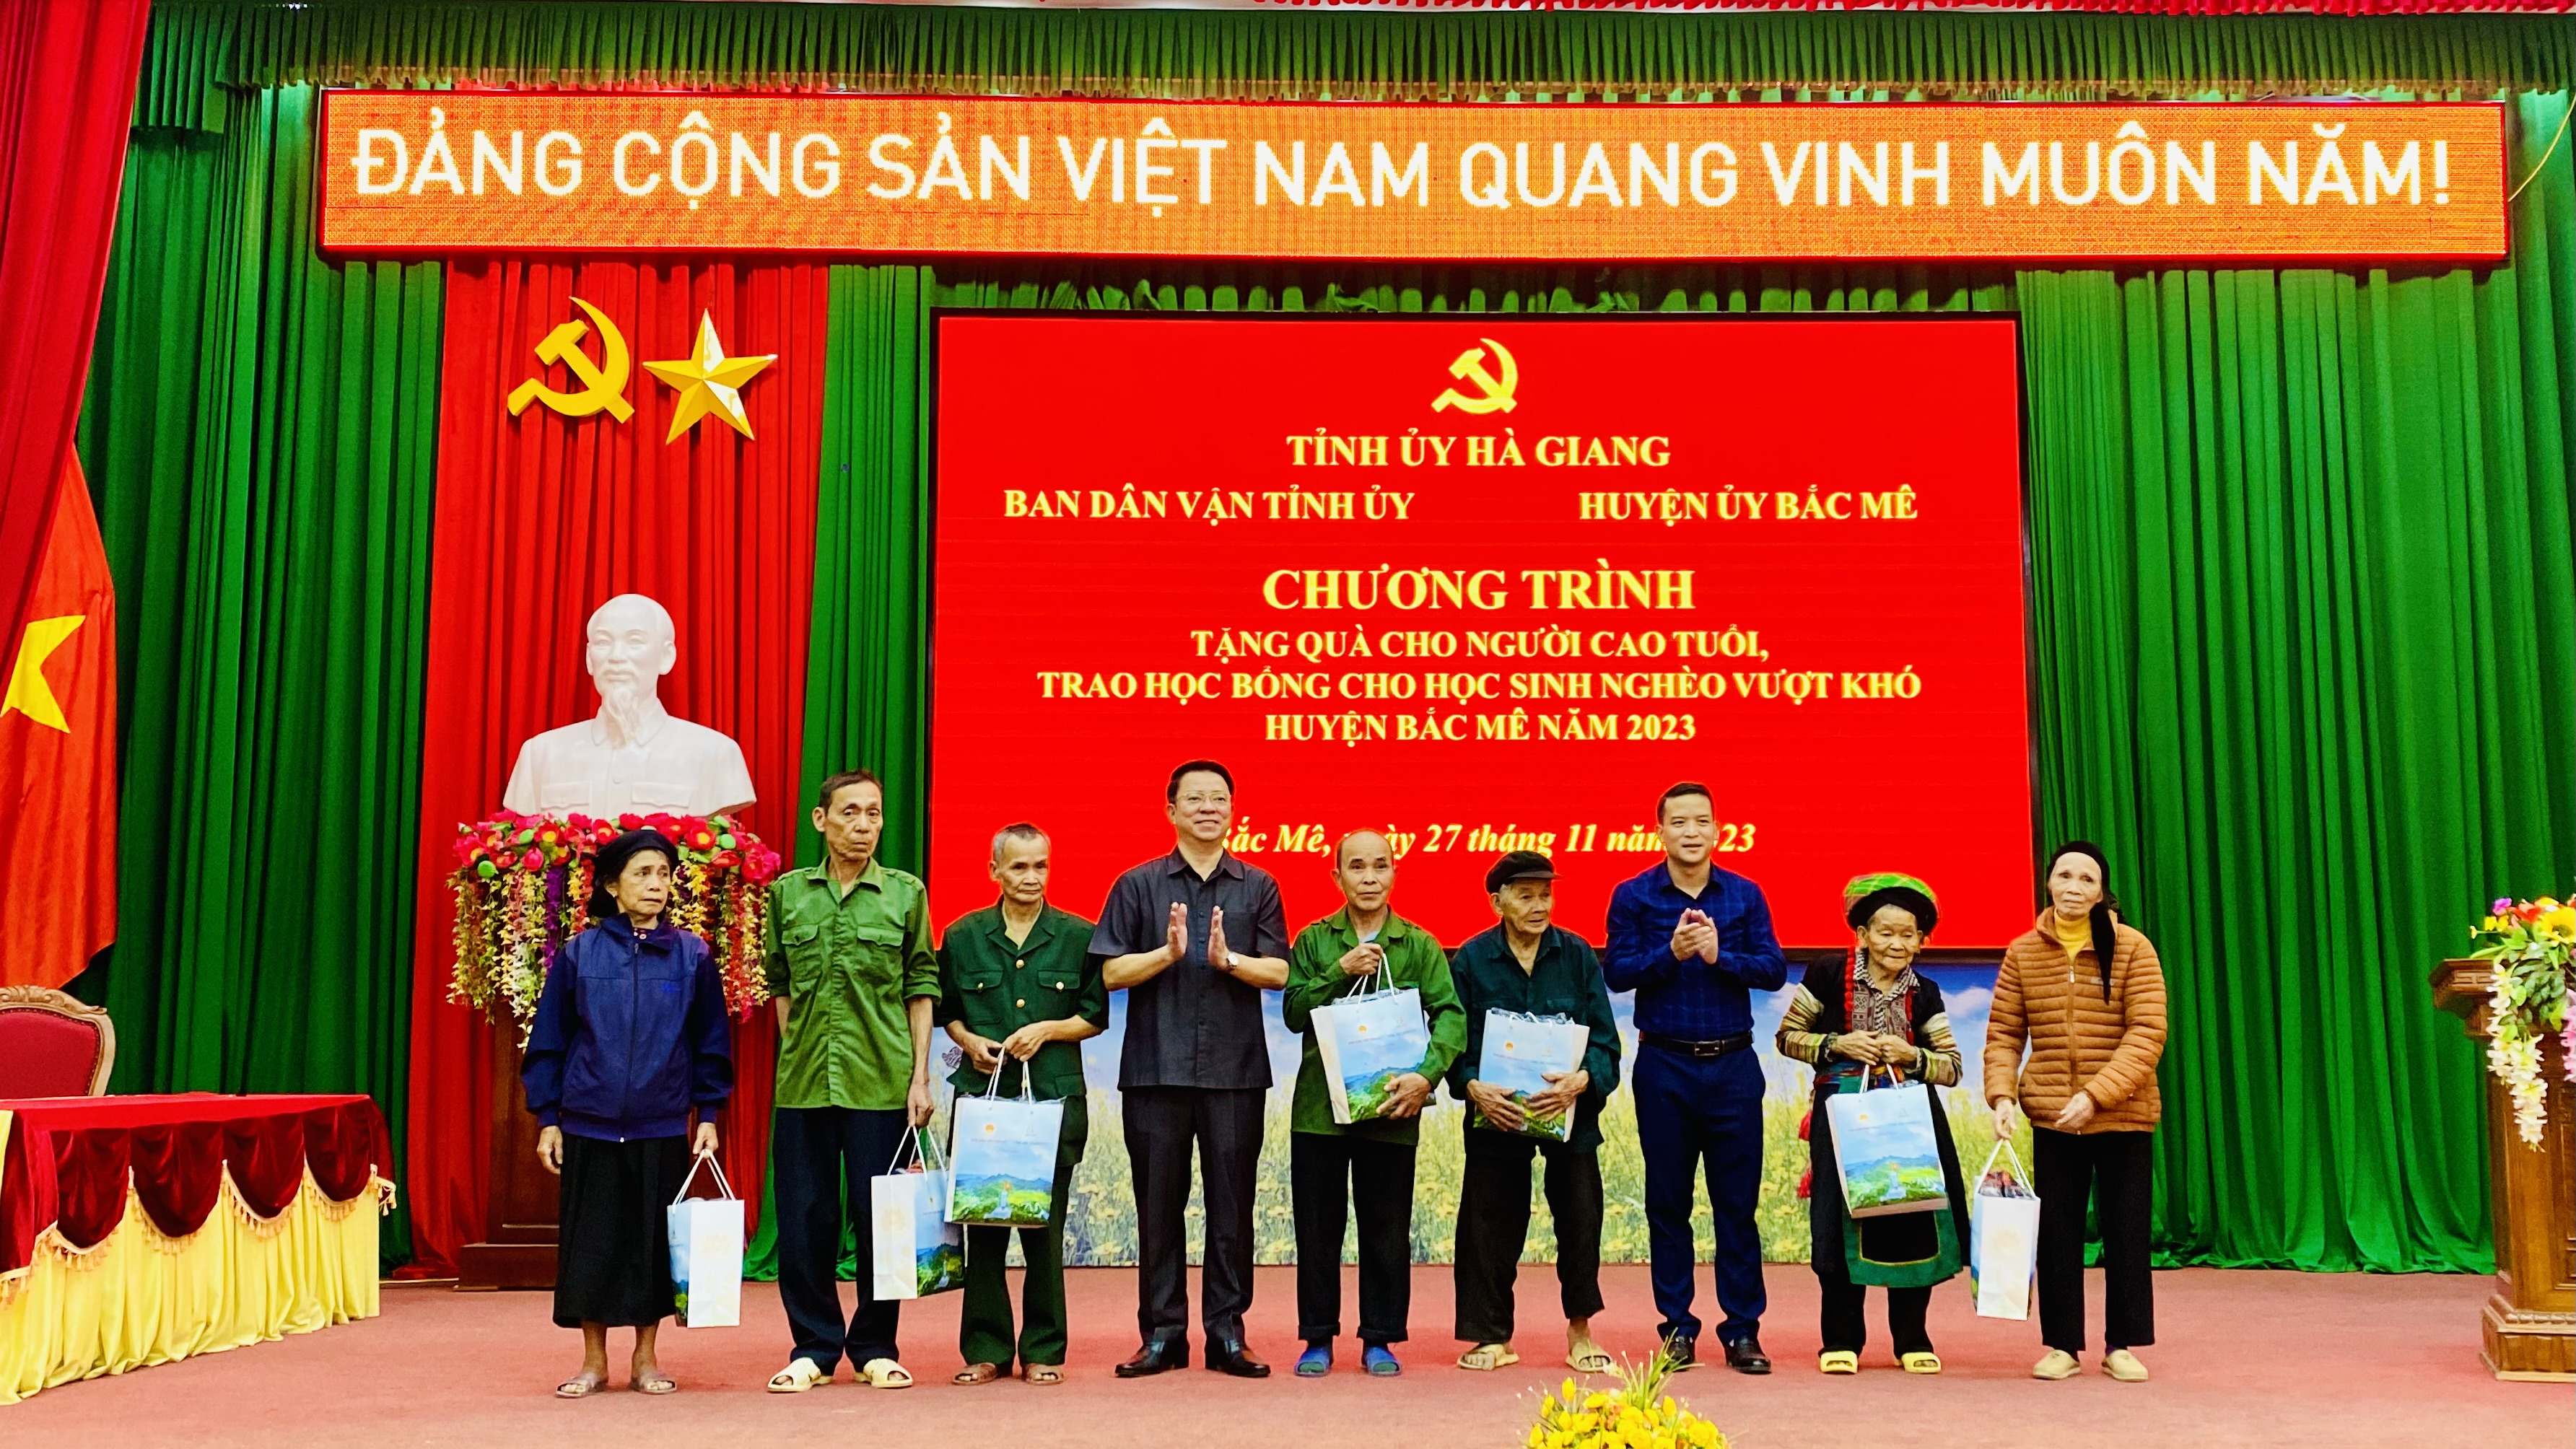 Trưởng Ban Dân Vận tỉnh ủy trao quà tại huyện Bắc Mê